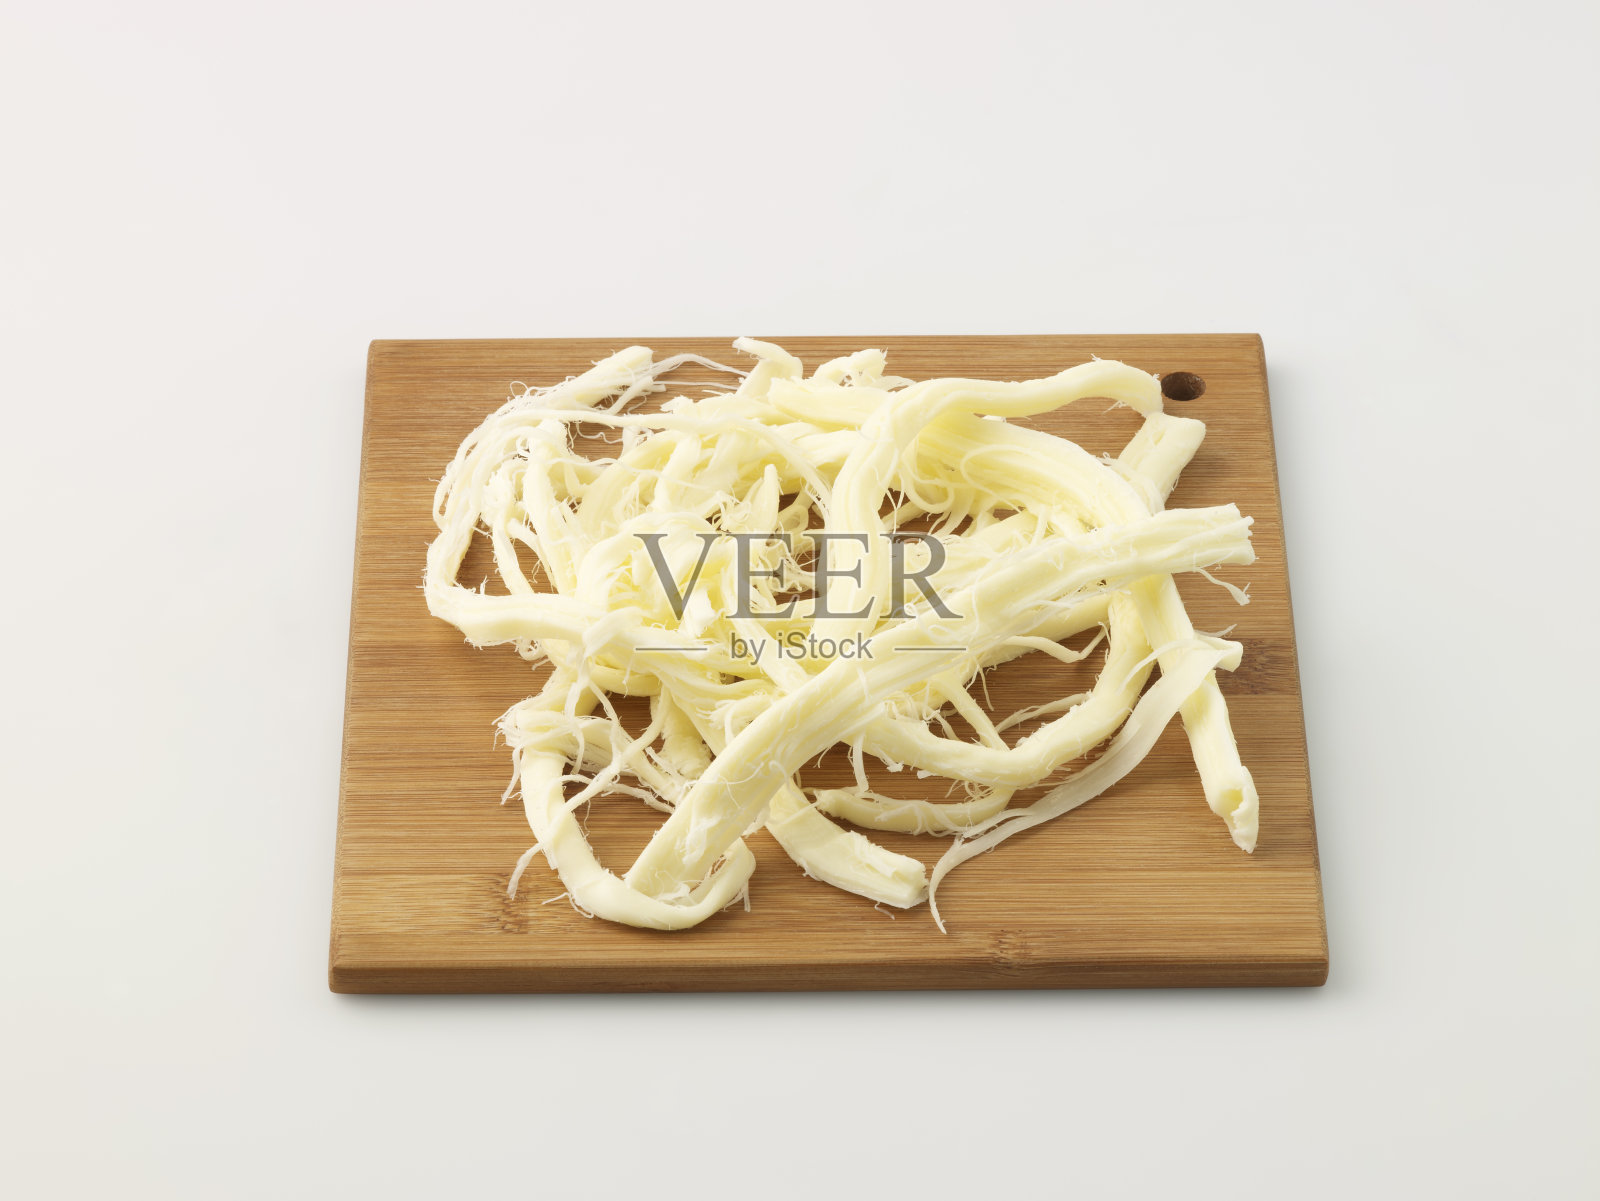 切菜板上的奶酪丝照片摄影图片